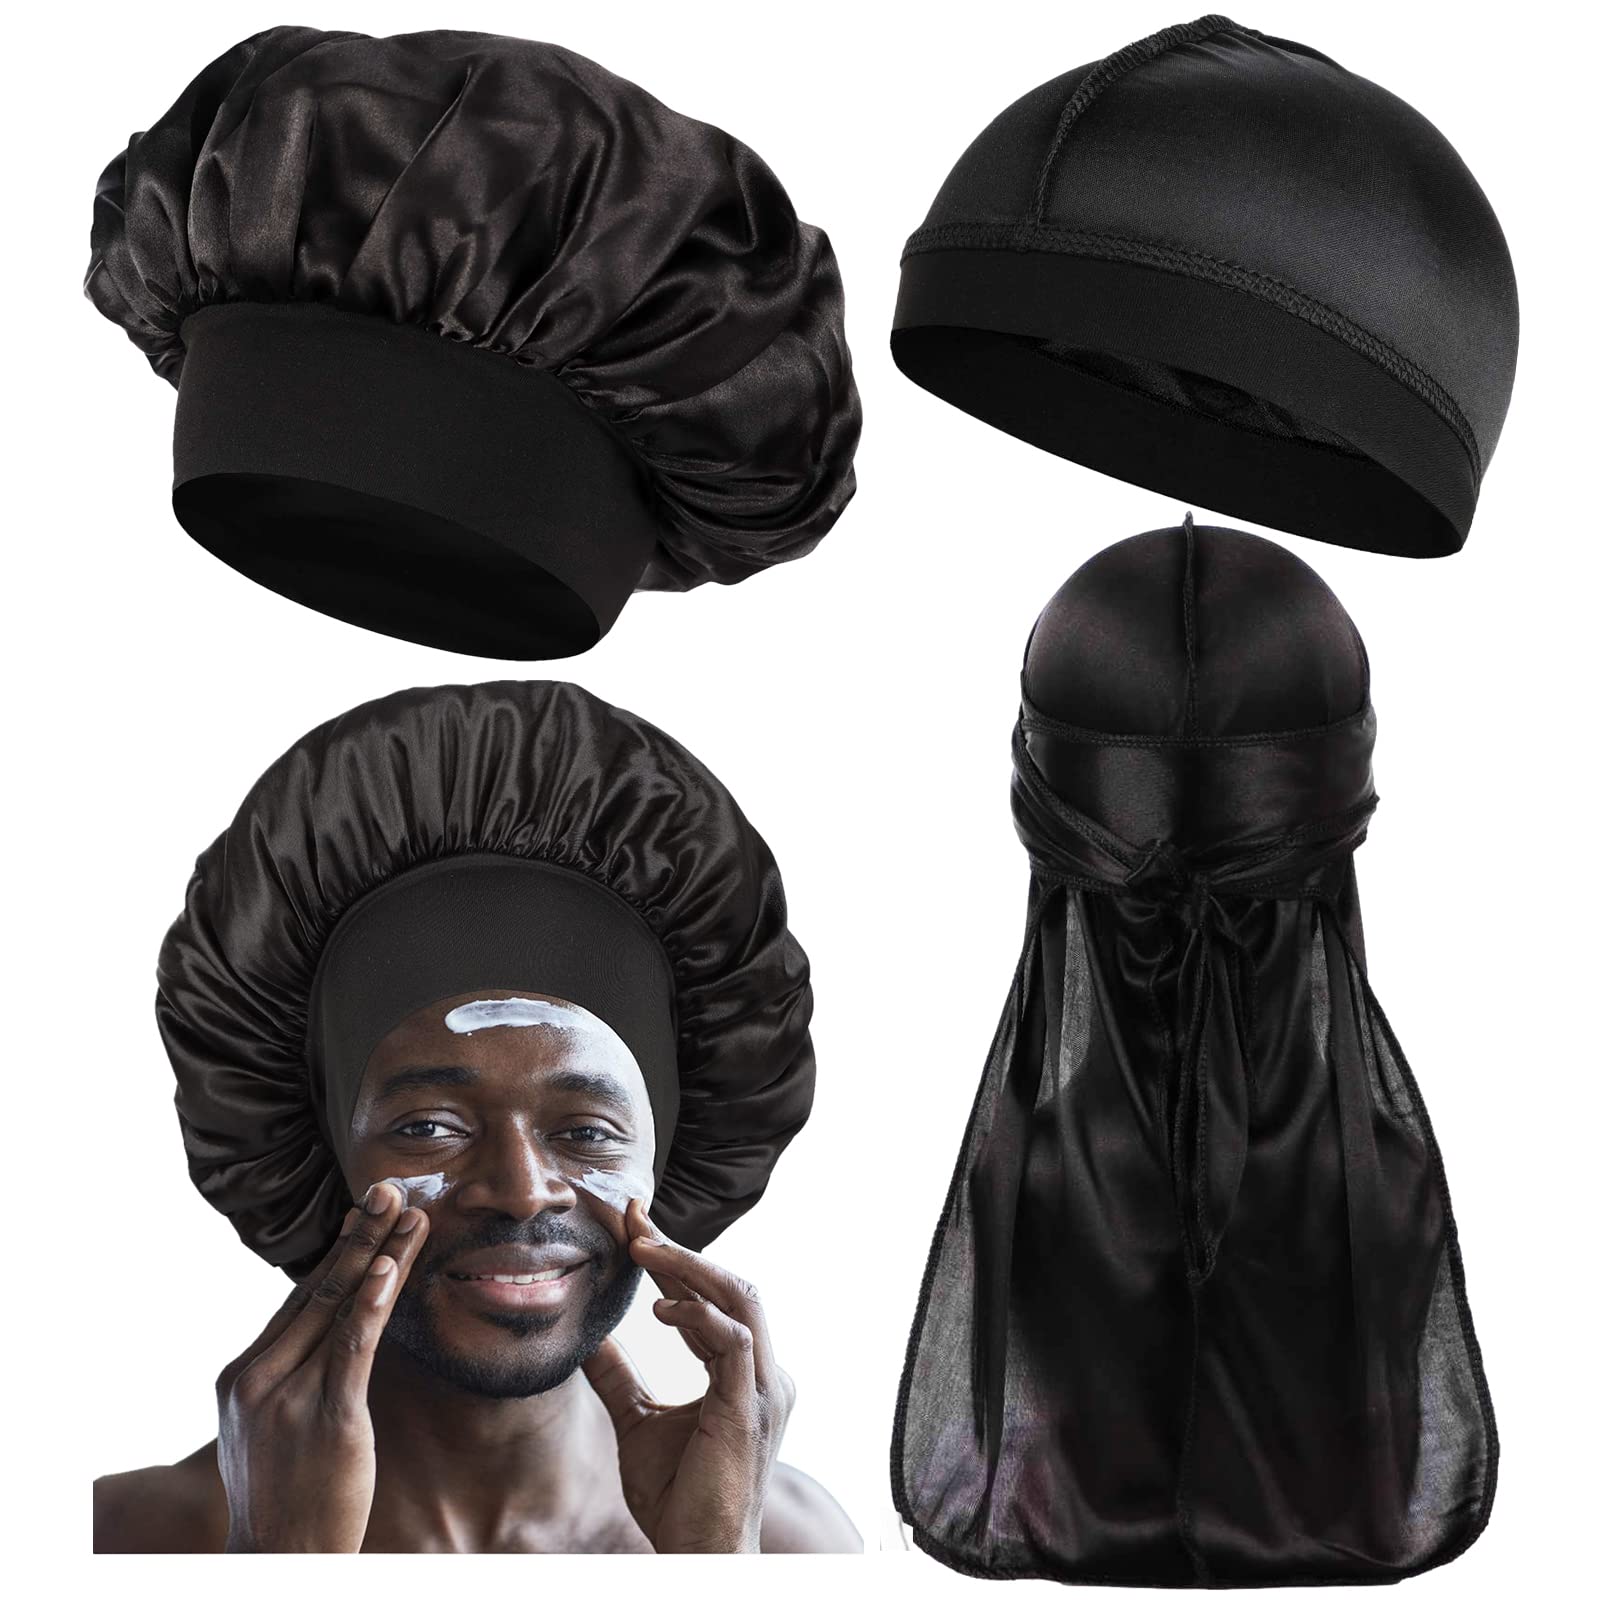  4 PCS Silk Bonnet for Men Curly Hair,Mens Bonnet for  Sleeping,Bonette for Men Silk,Bonnet and Durag Set D-Black, Wine Red :  Beauty & Personal Care